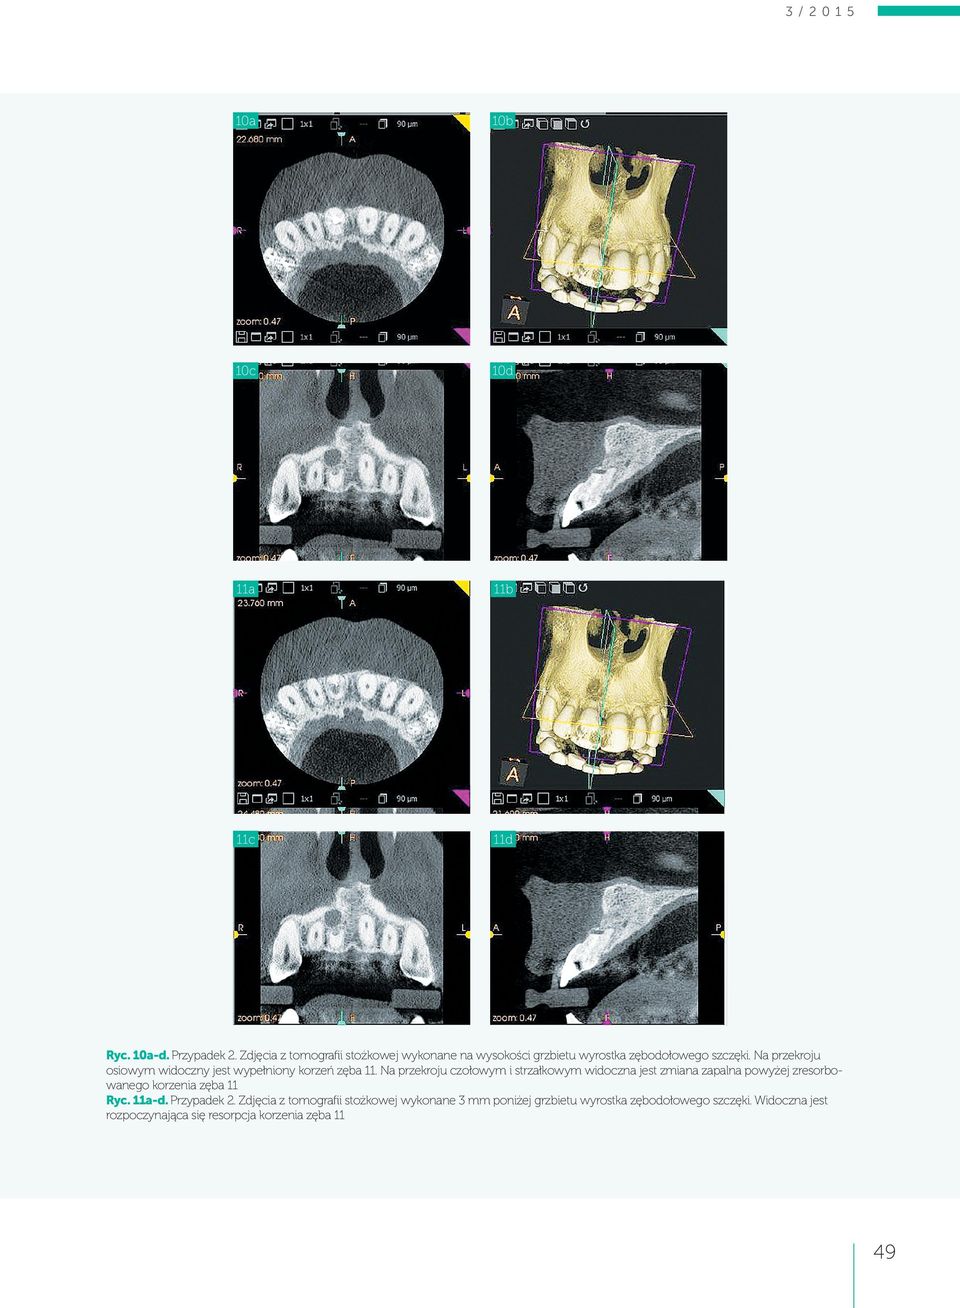 Na przekroju osiowym widoczny jest wypełniony korzeń zęba 11.